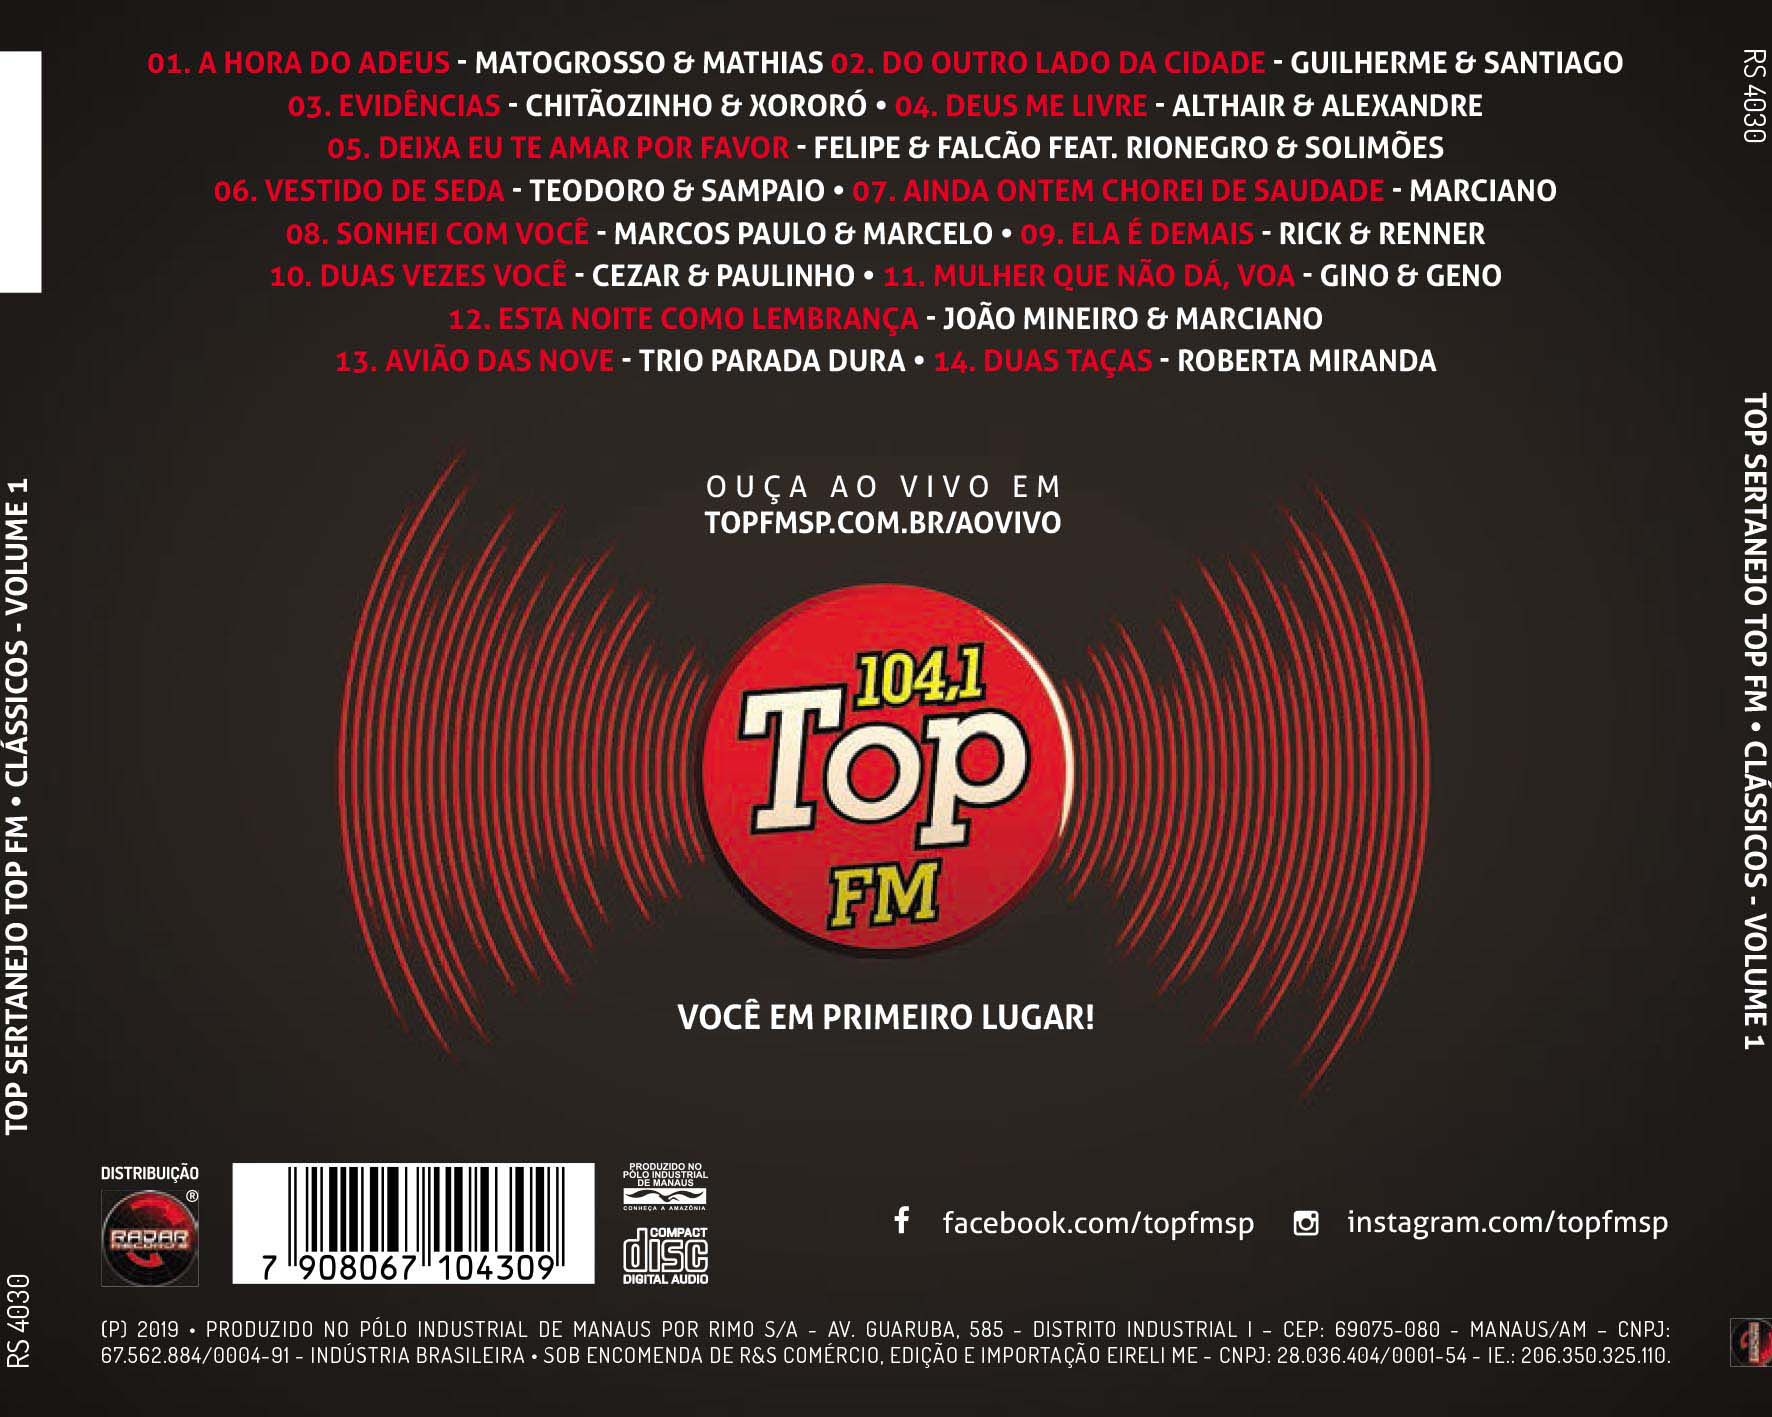 TOP SERTANEJO TOP FM - CLÁSSICOS VOL. 1